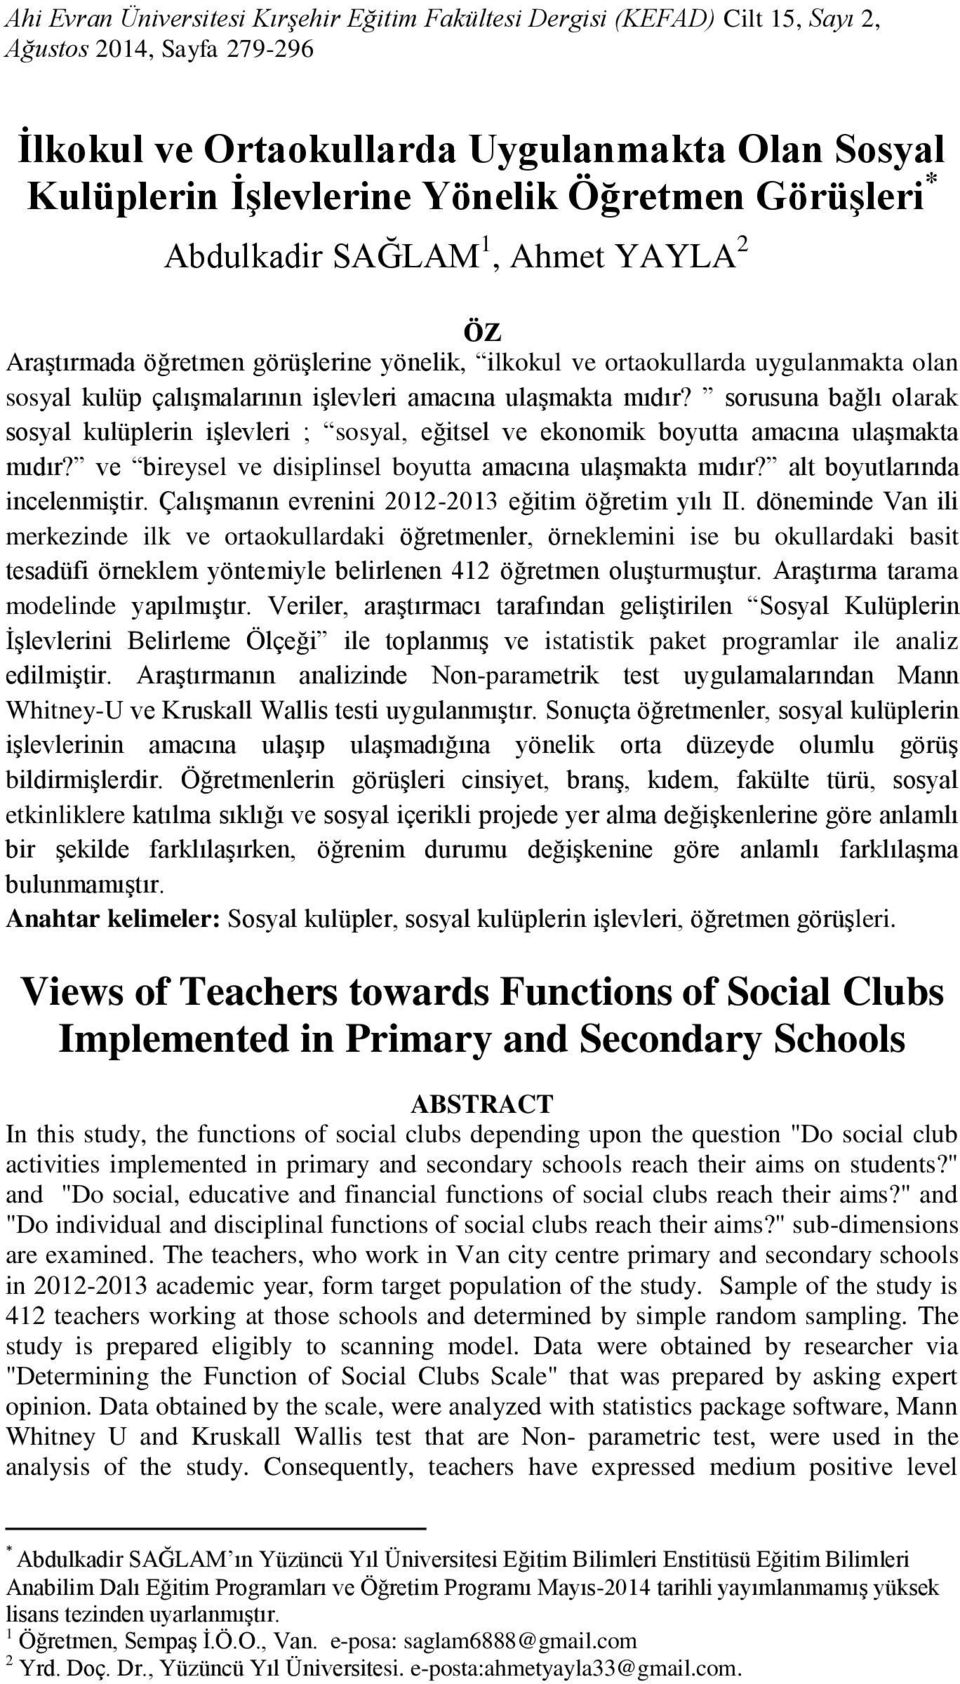 sorusuna bağlı olarak sosyal kulüplerin işlevleri ; sosyal, eğitsel ve ekonomik boyutta amacına ulaşmakta mıdır? ve bireysel ve disiplinsel boyutta amacına ulaşmakta mıdır?